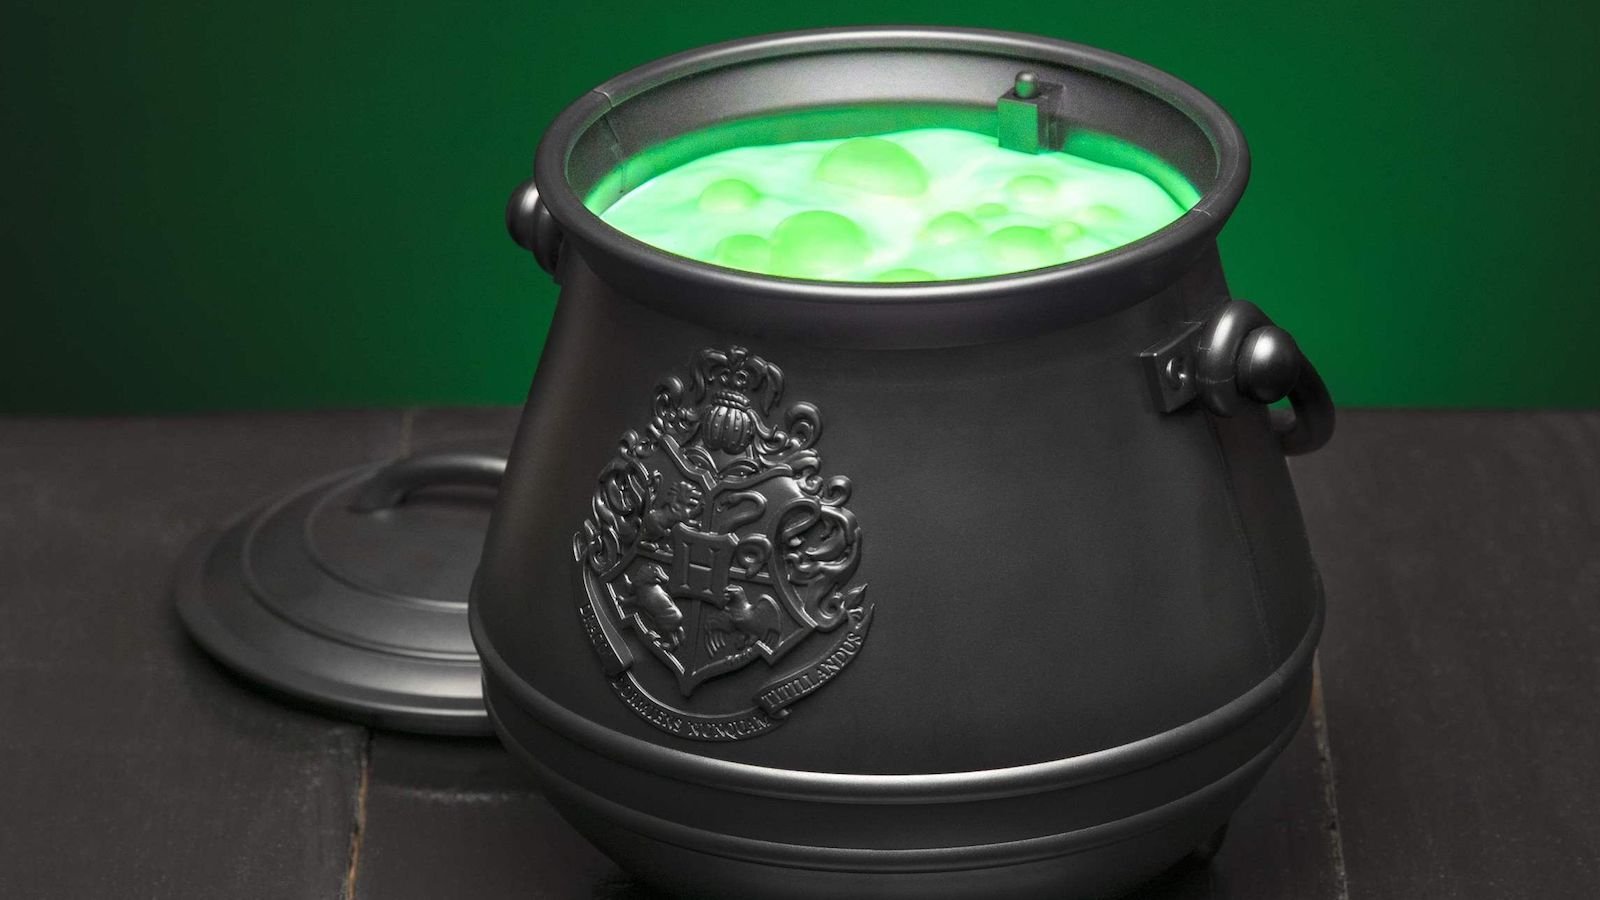 Paladone Harry Potter Cauldron Light contains a magical color-changing concoction